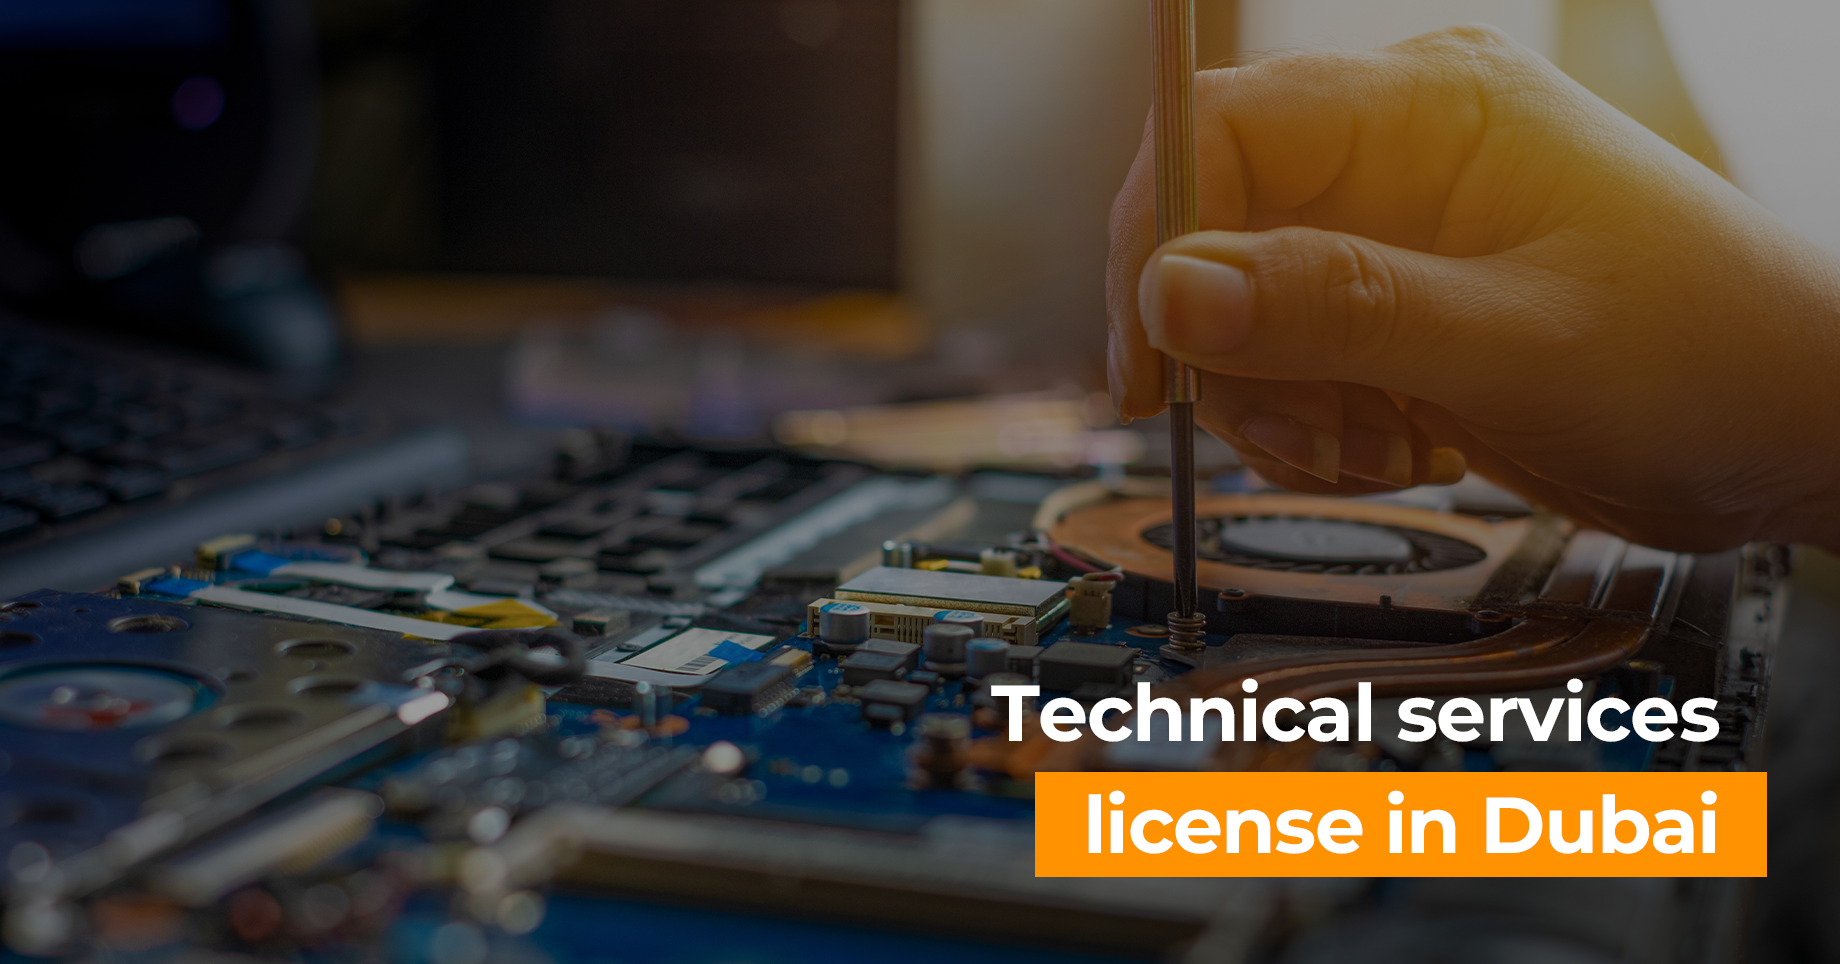 Technical services license in Dubai